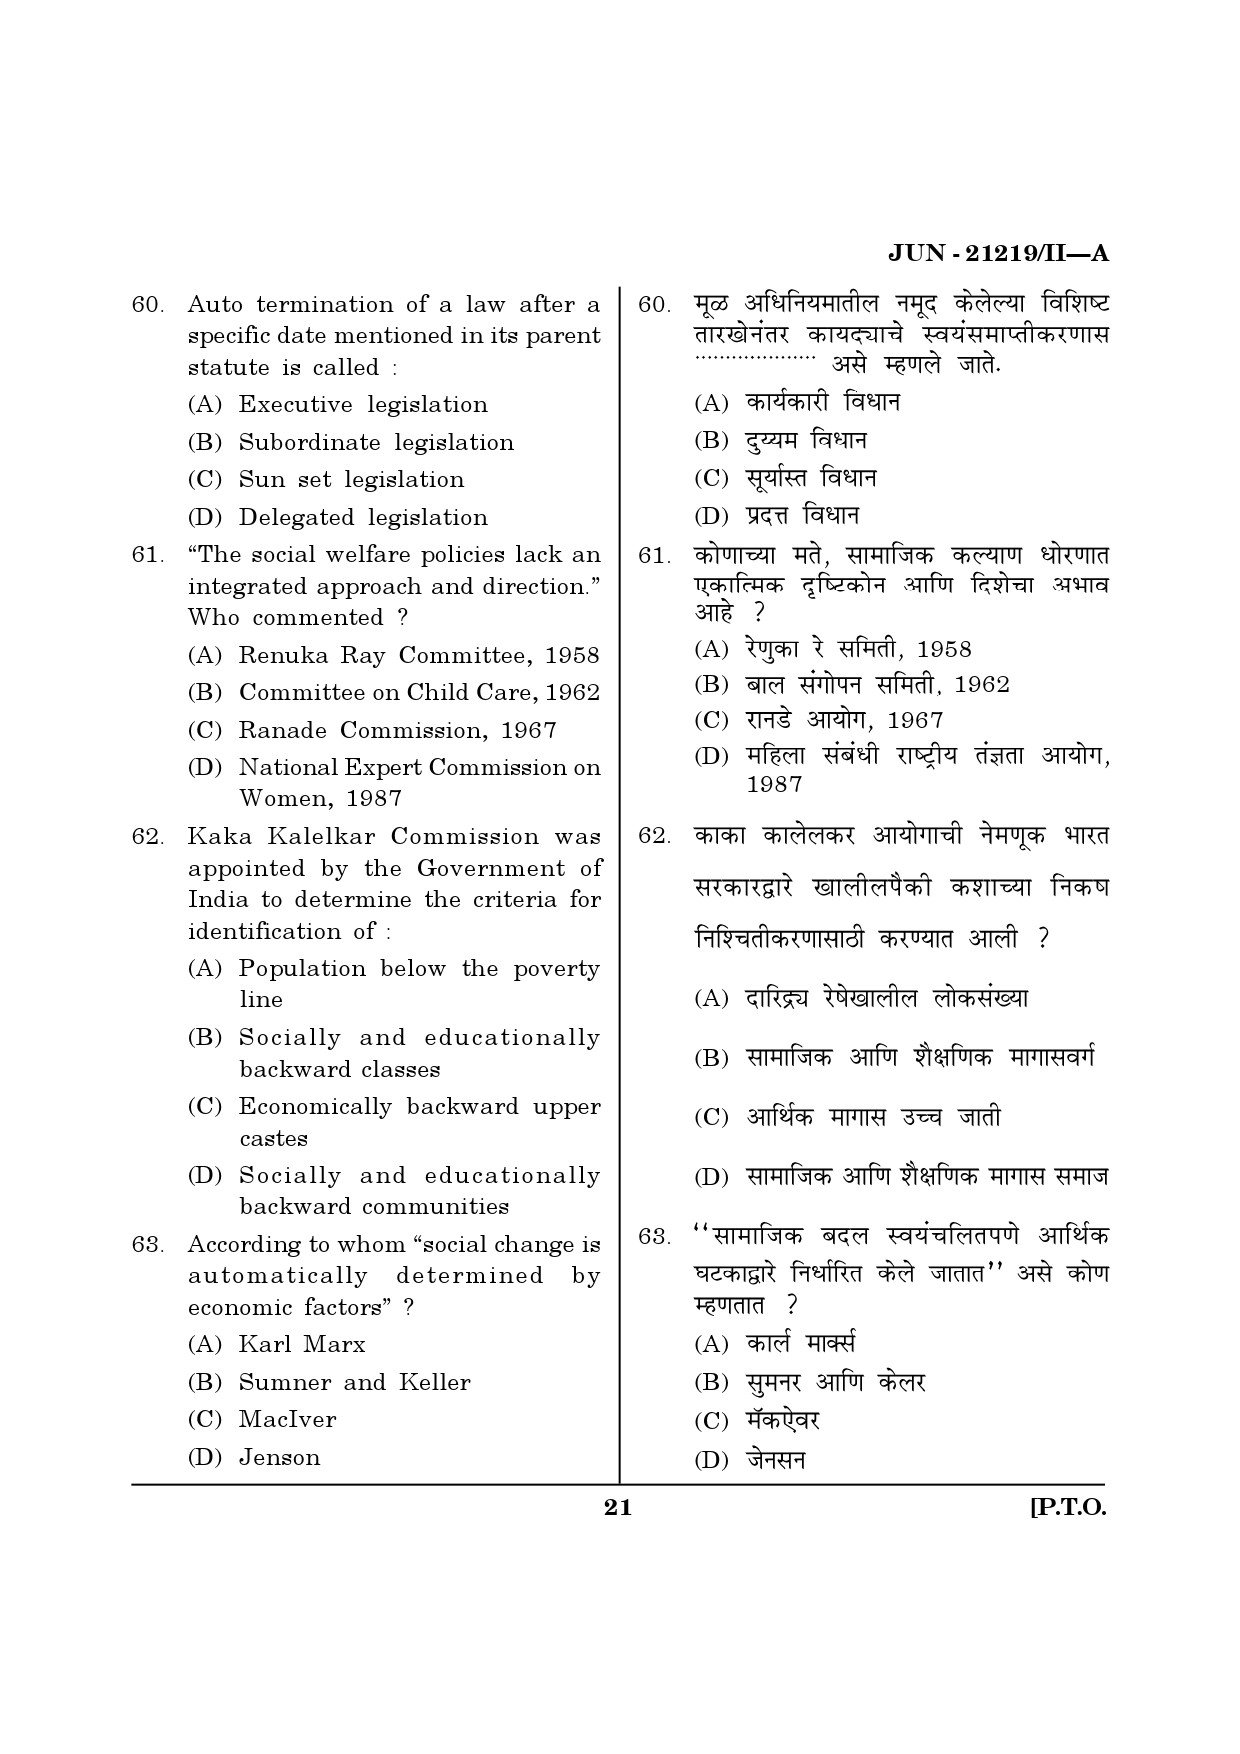 Maharashtra SET Public Administration Question Paper II June 2019 20